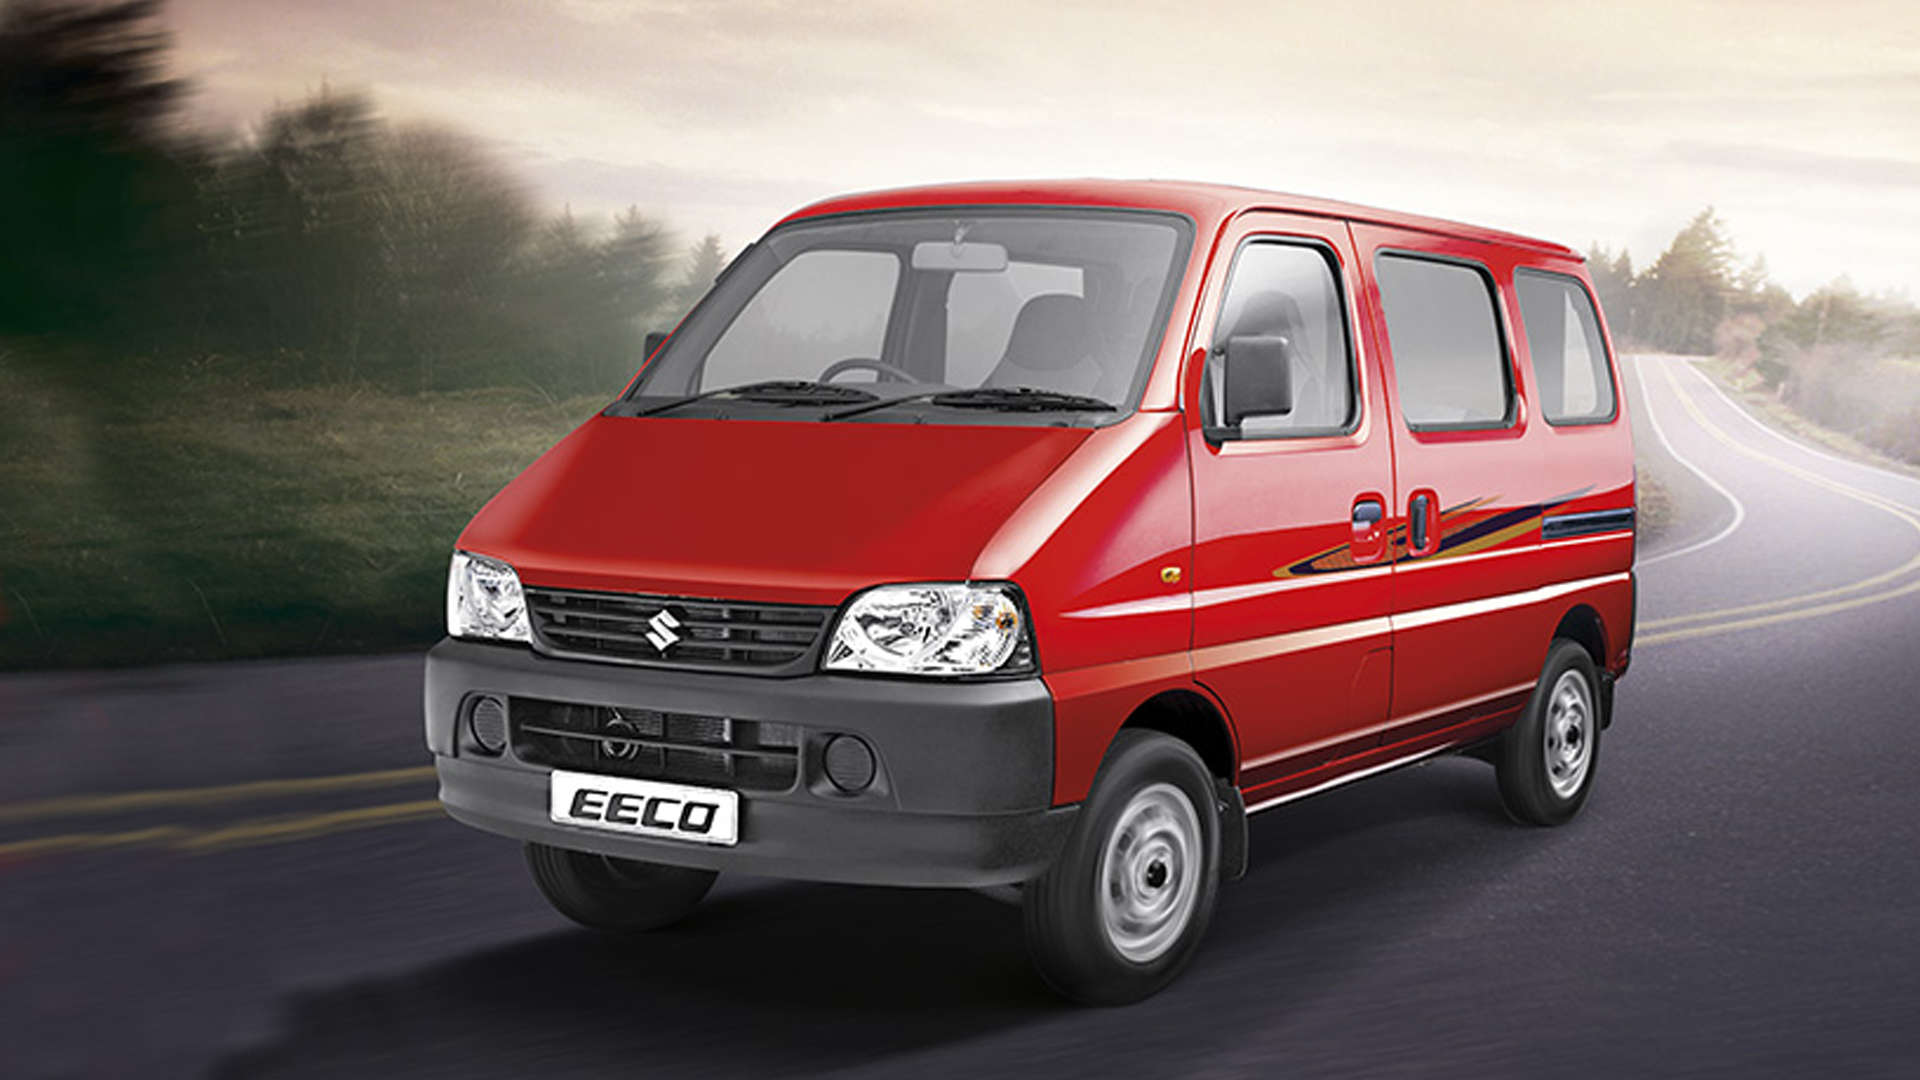 maruti eeco recall: Maruti Suzuki to proactively recall 453 units of Eeco, Auto News, ET Auto